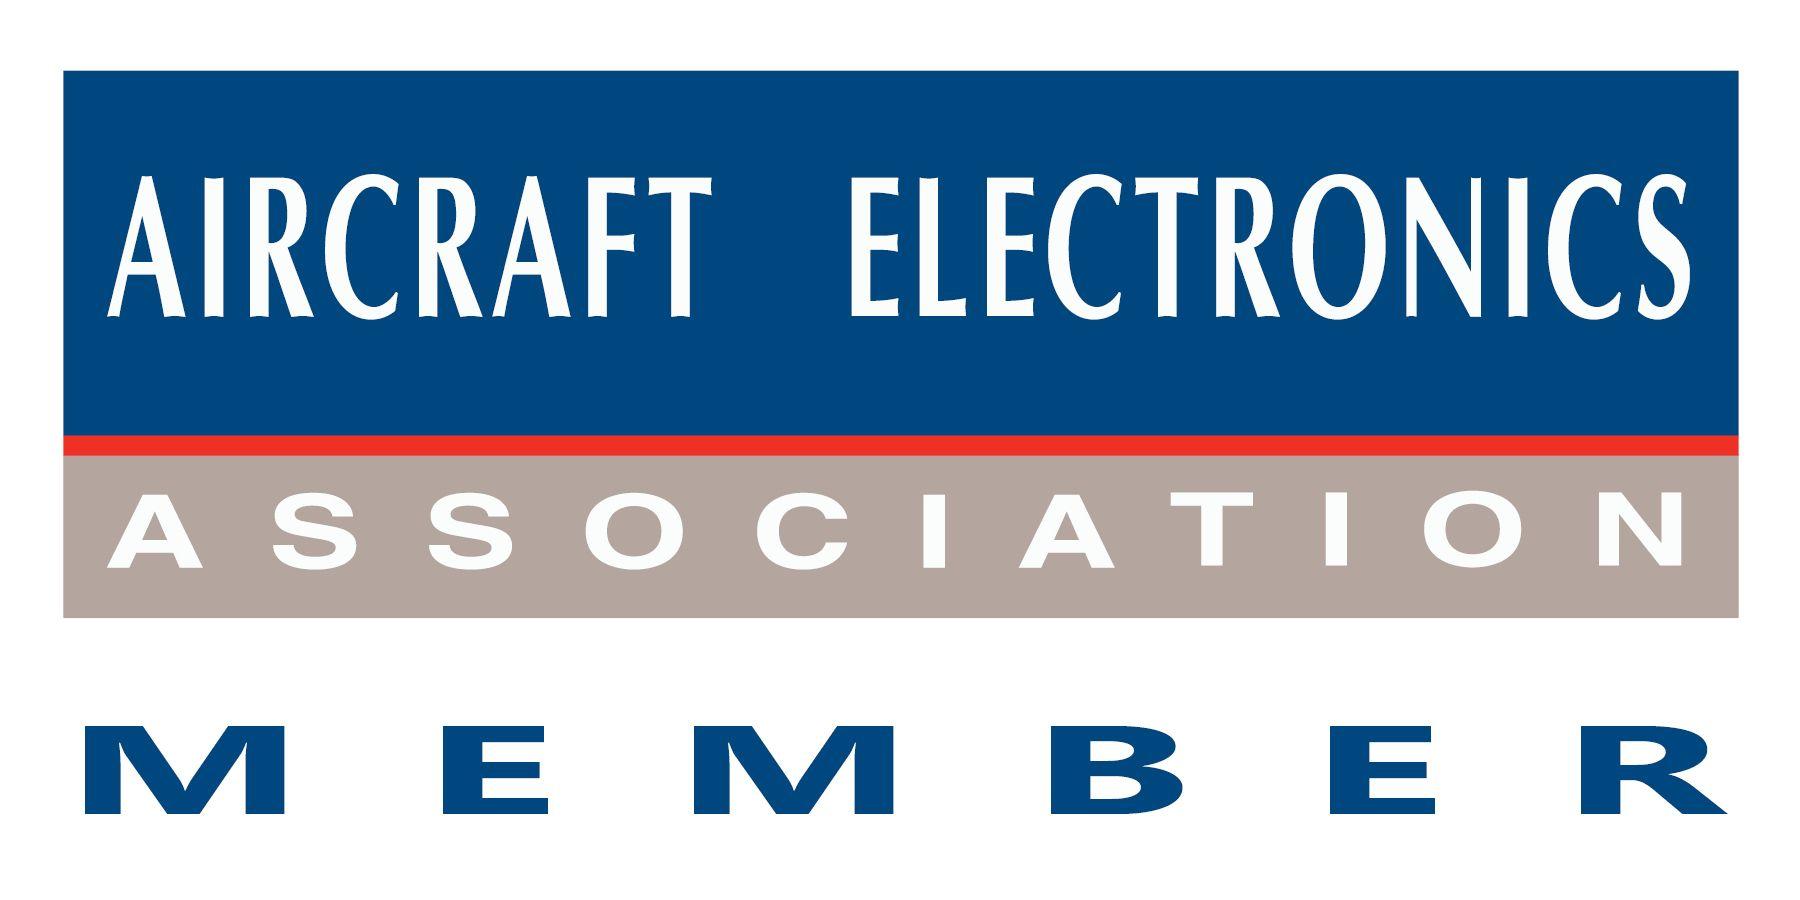 Aircraft Electronics Logo - The Aircraft Electronics Association